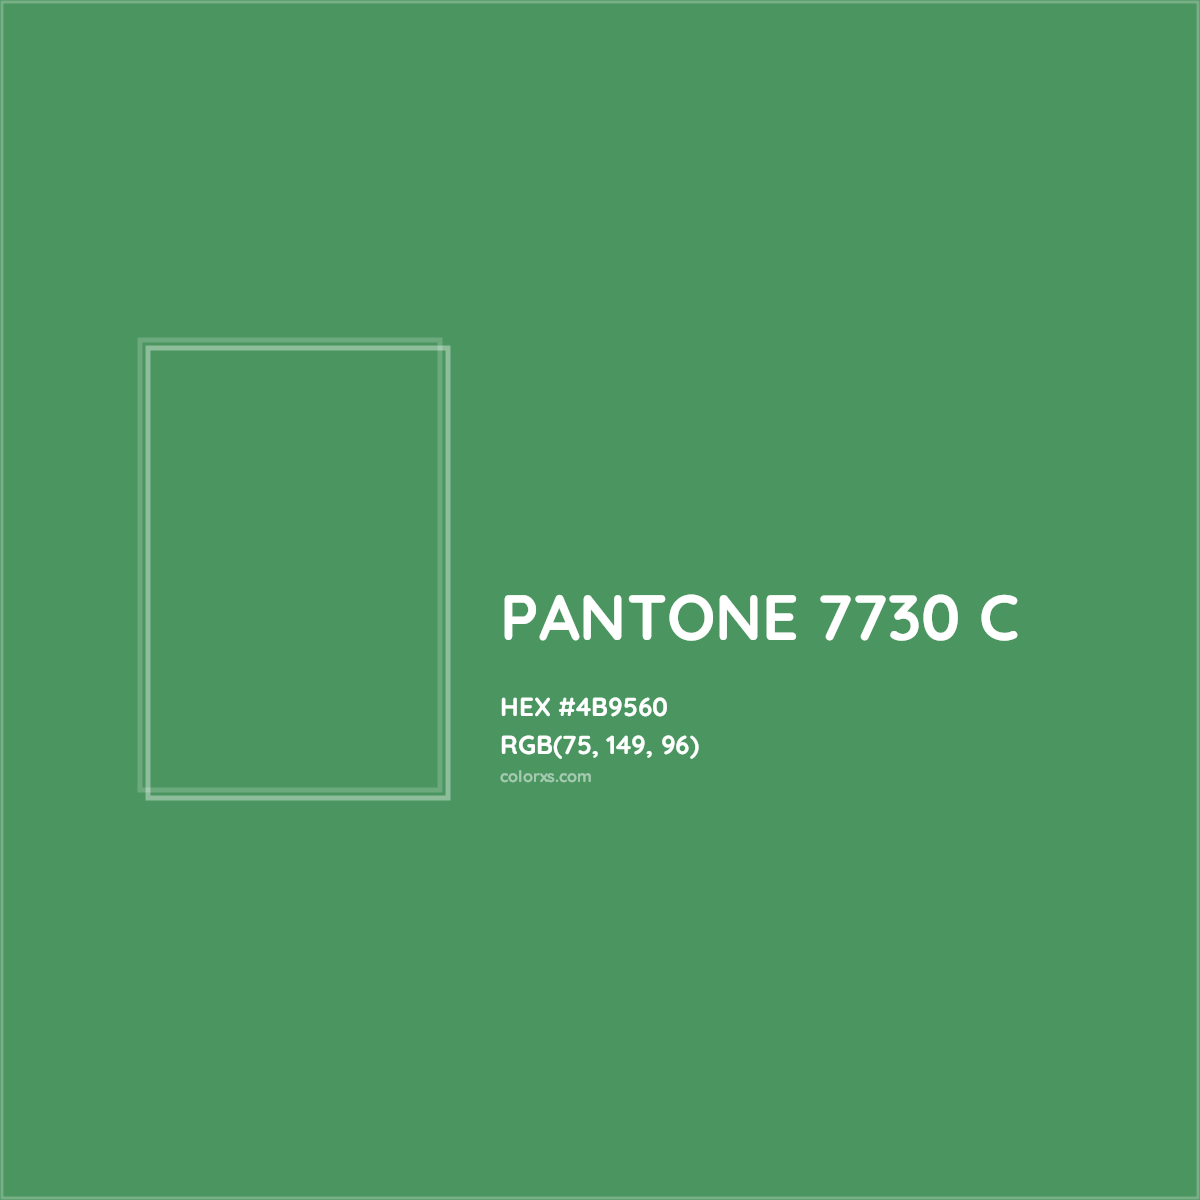 HEX #4B9560 PANTONE 7730 C CMS Pantone PMS - Color Code